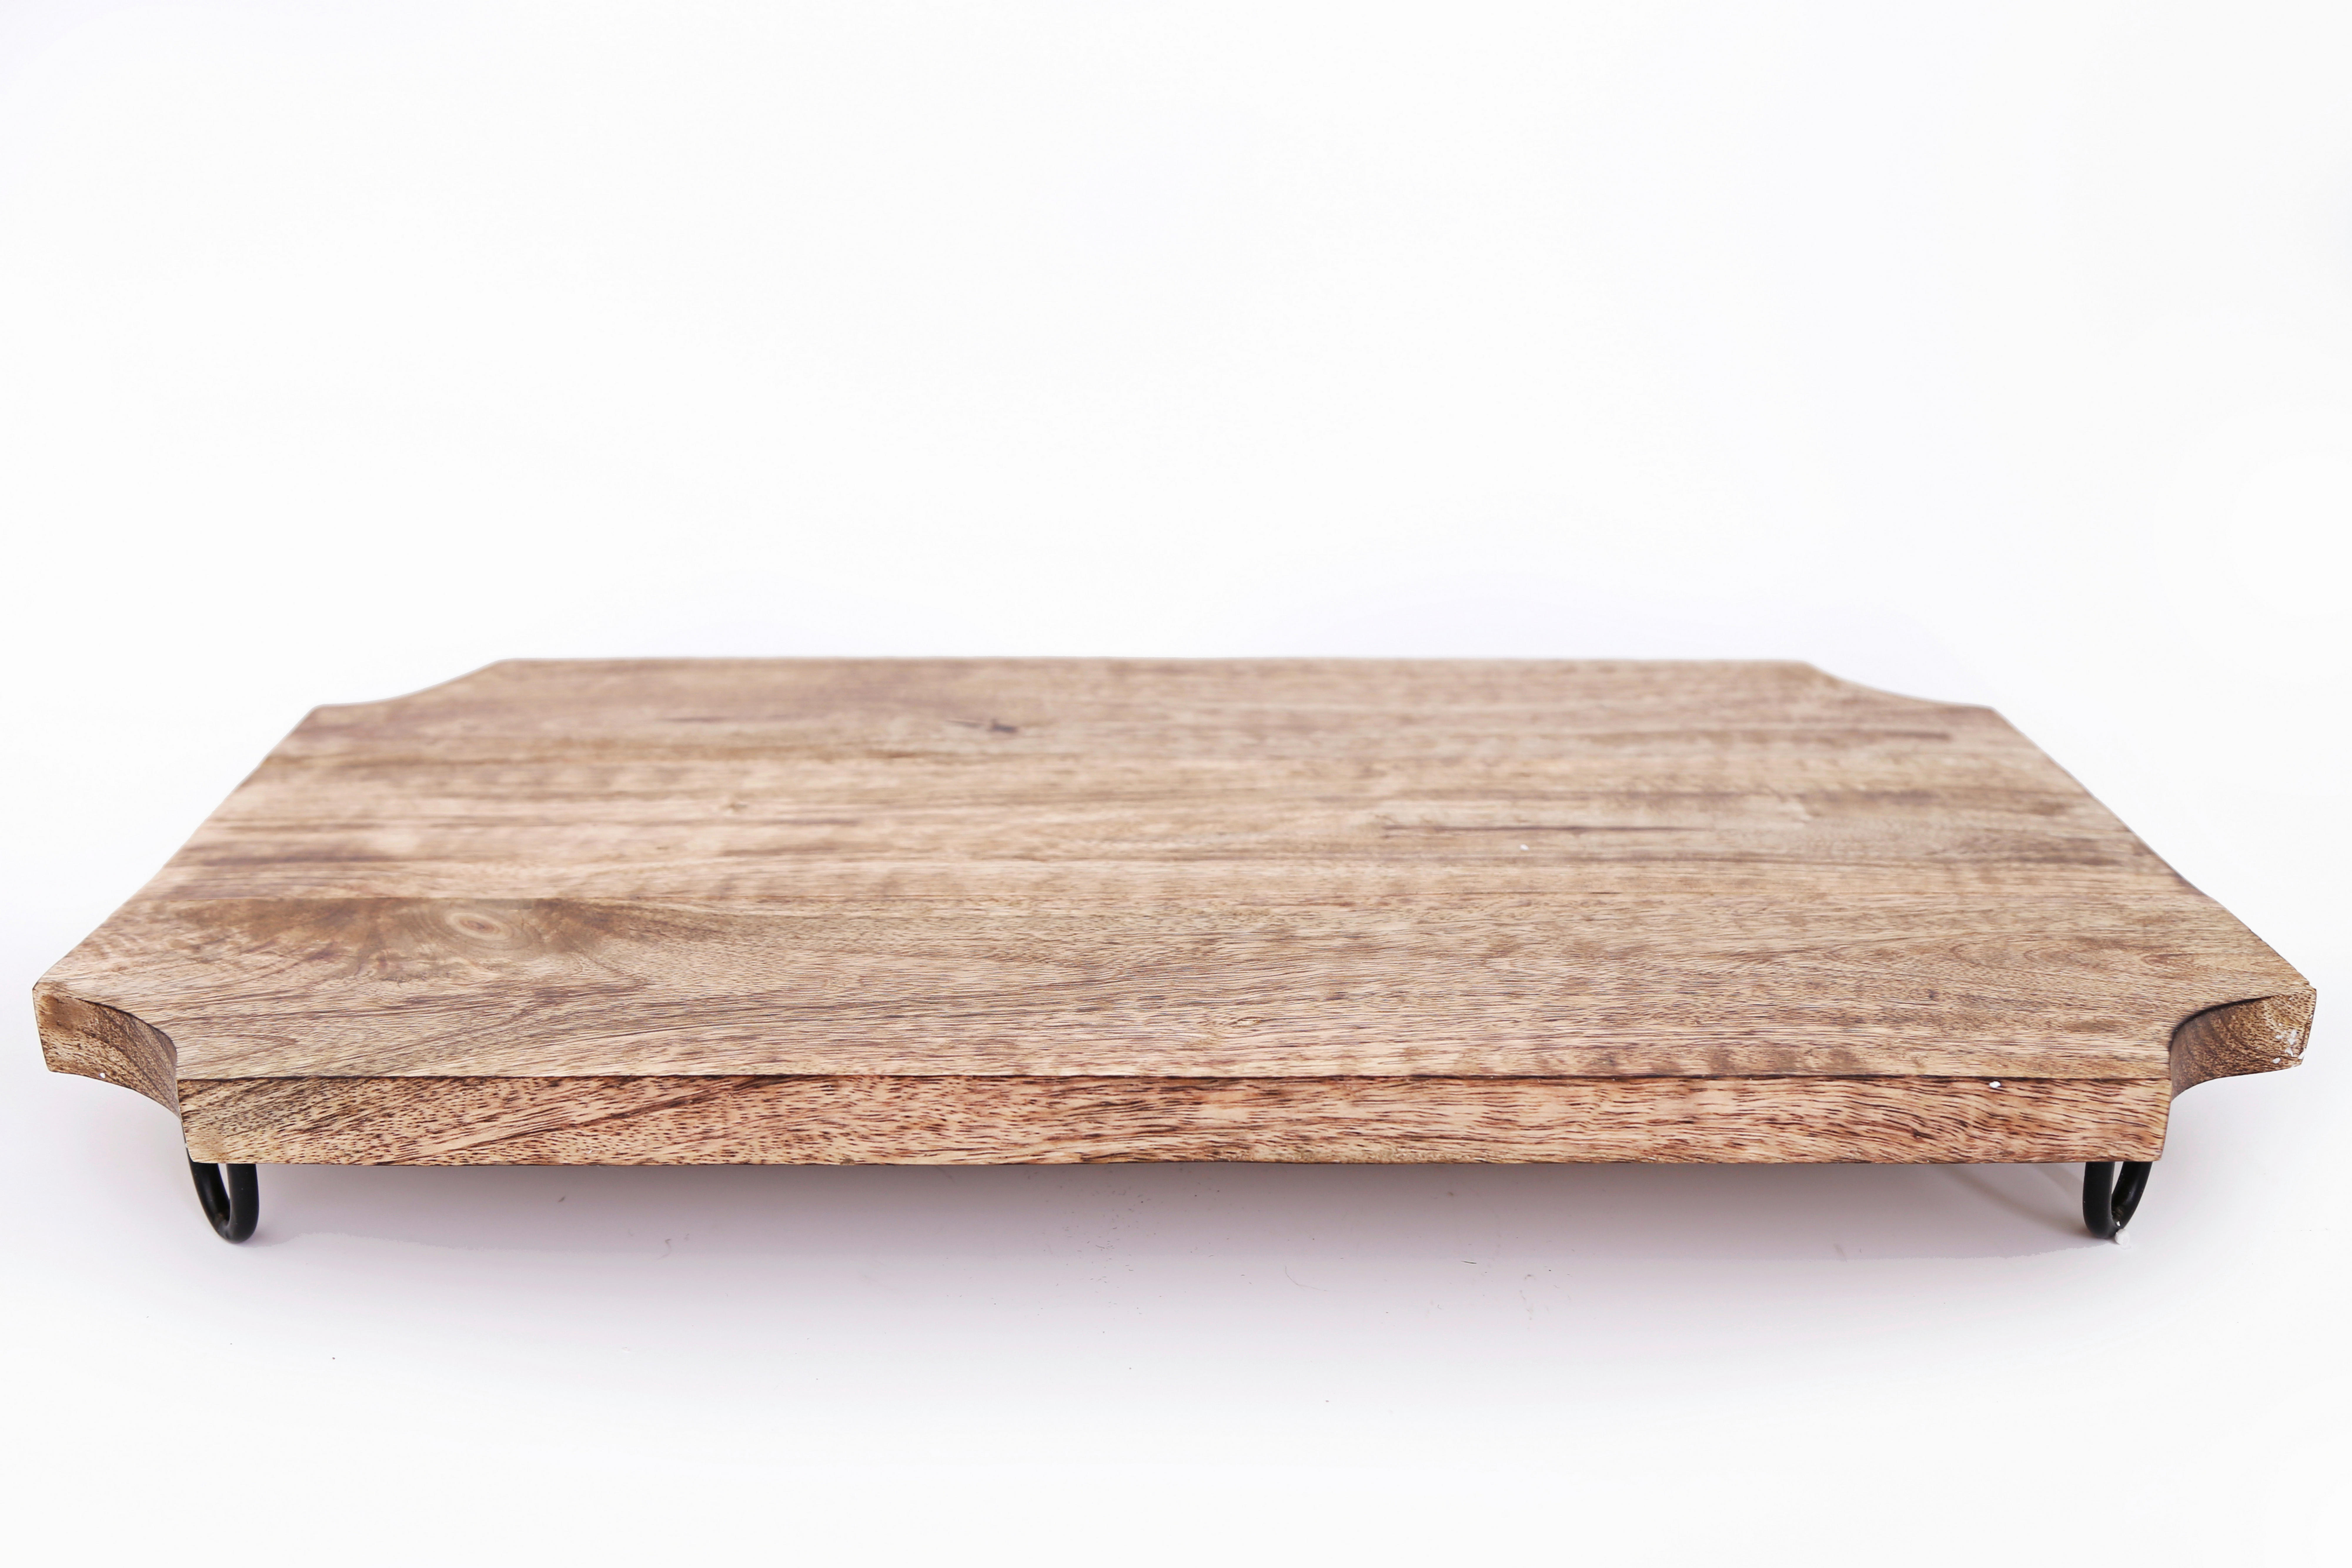 KUCHYŇSKÉ PRKÉNKO 50/30/6 cm - mangové dřevo